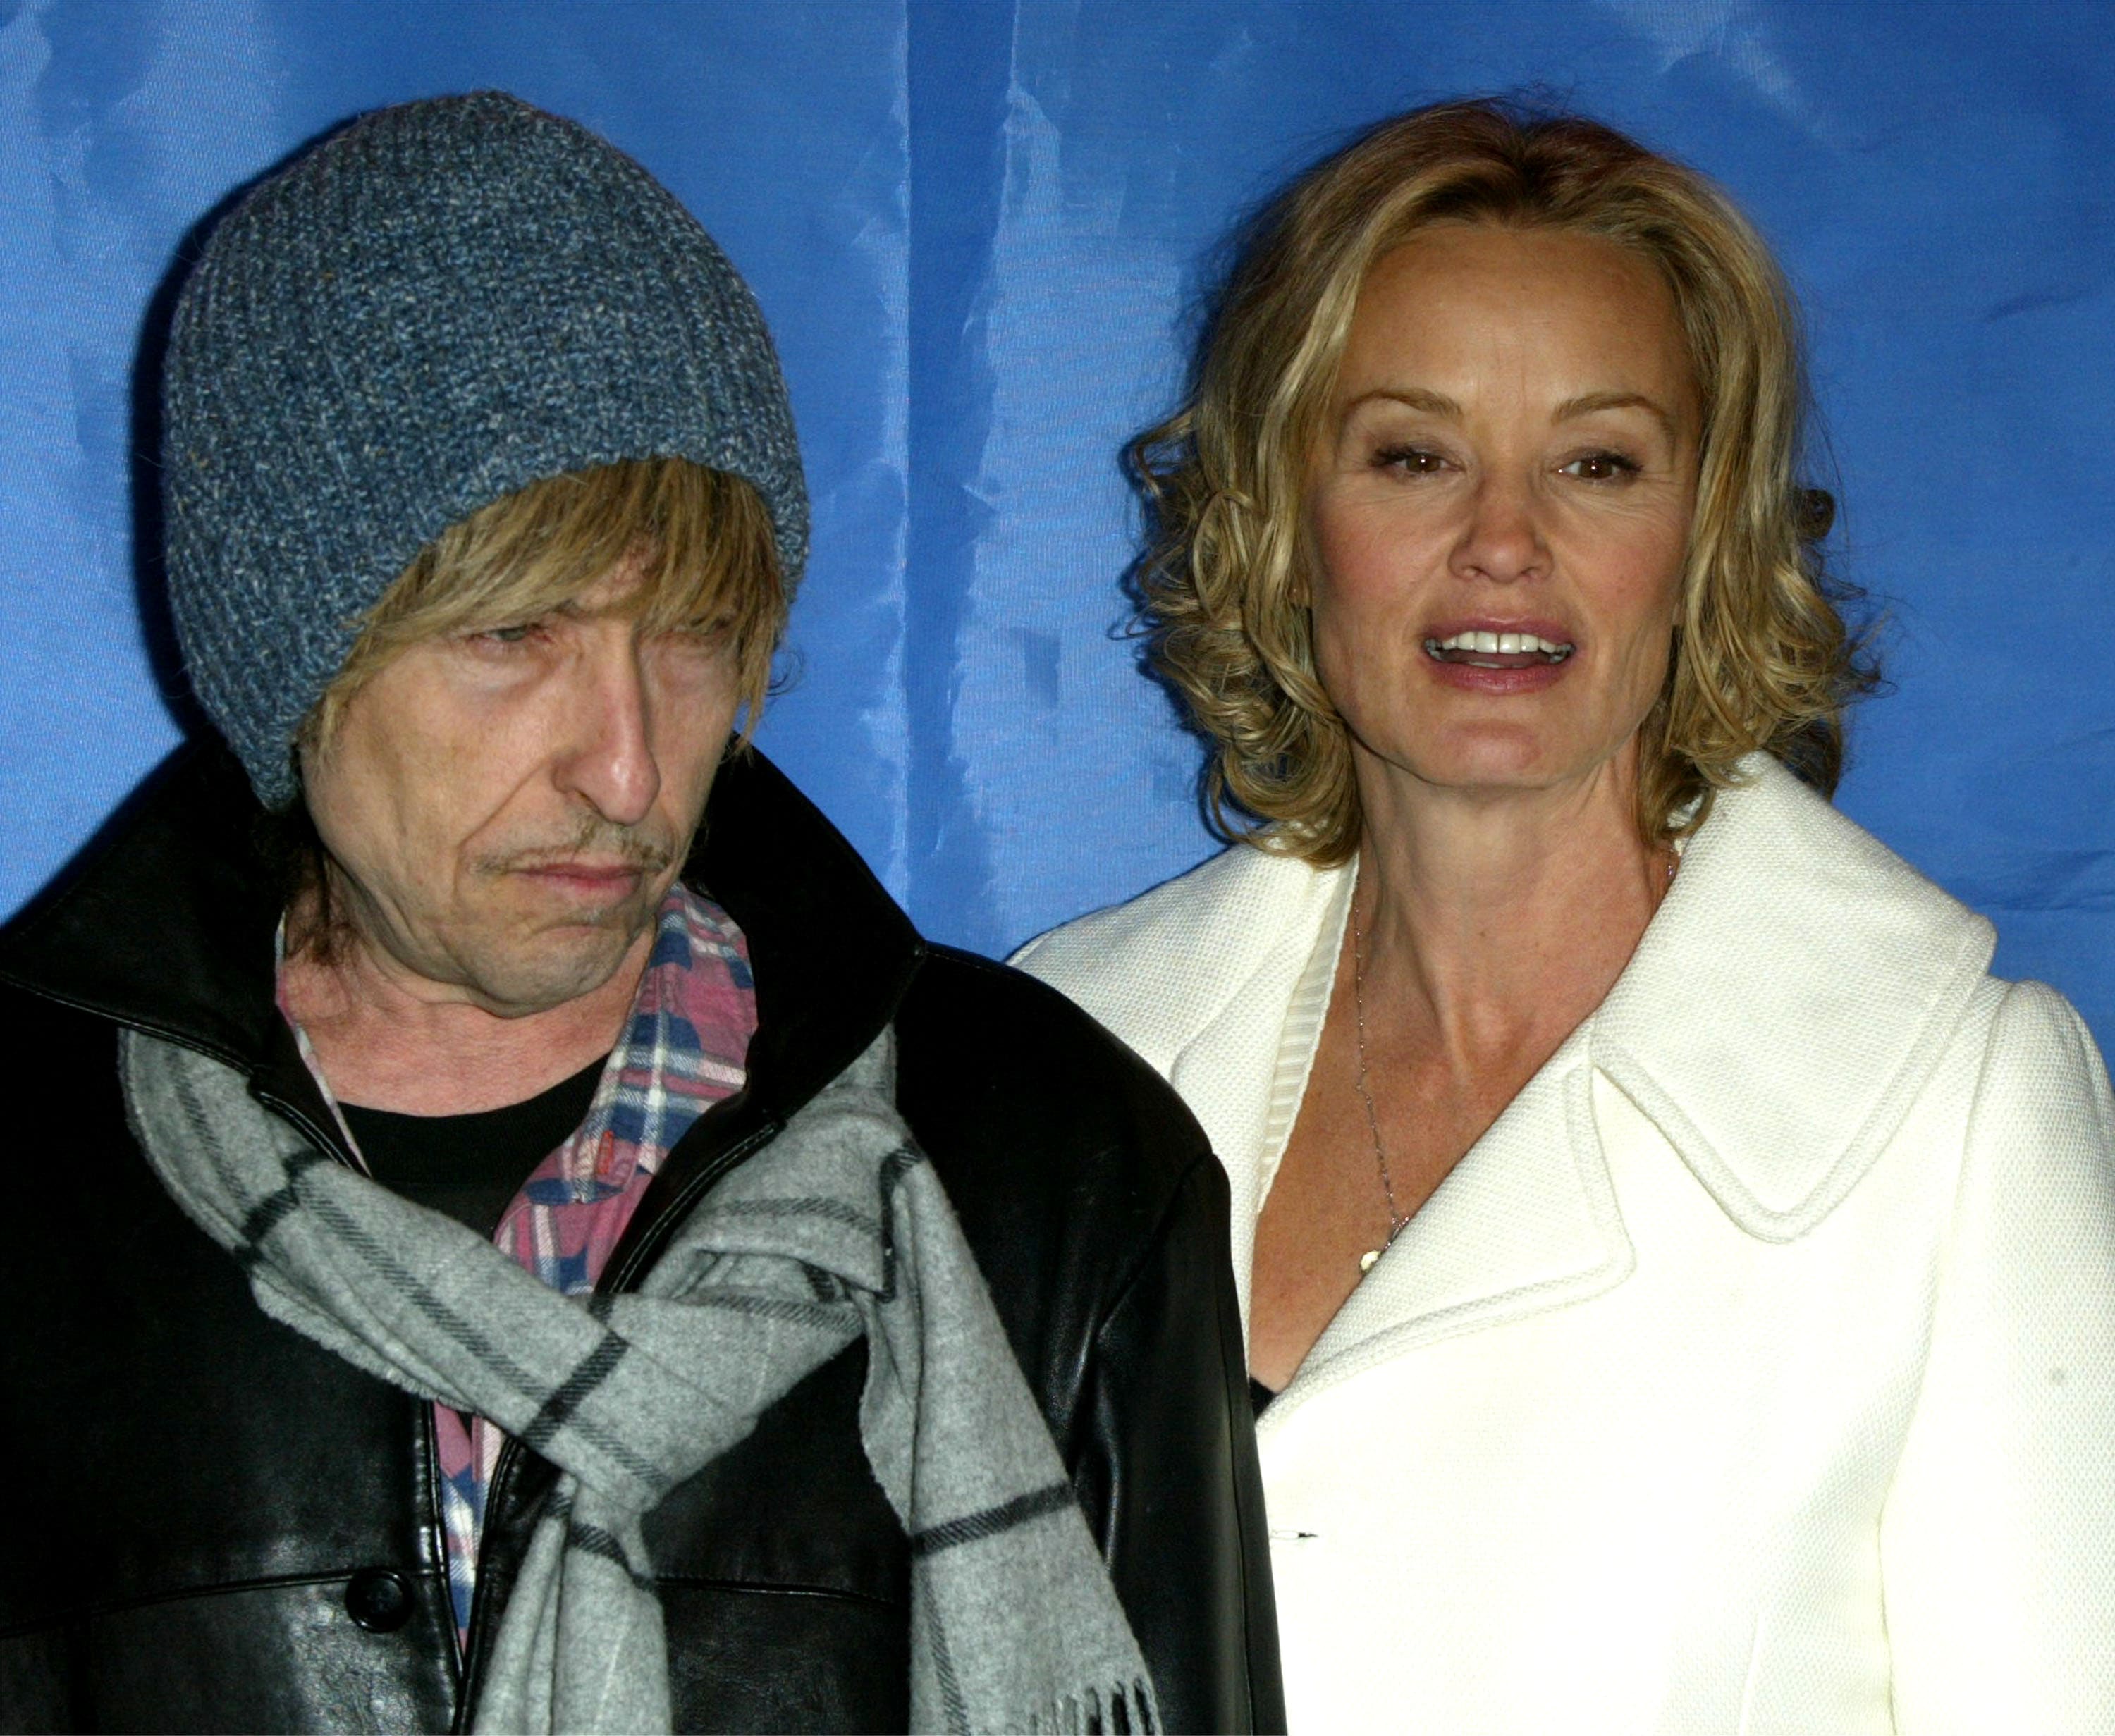 Gennaio 2003. Un Bob Dylan insolitamente biondo e Jessica Lange posano per i fotografi all'anteprima del film "Masked and Anonymous" al Sundance Film Festival 